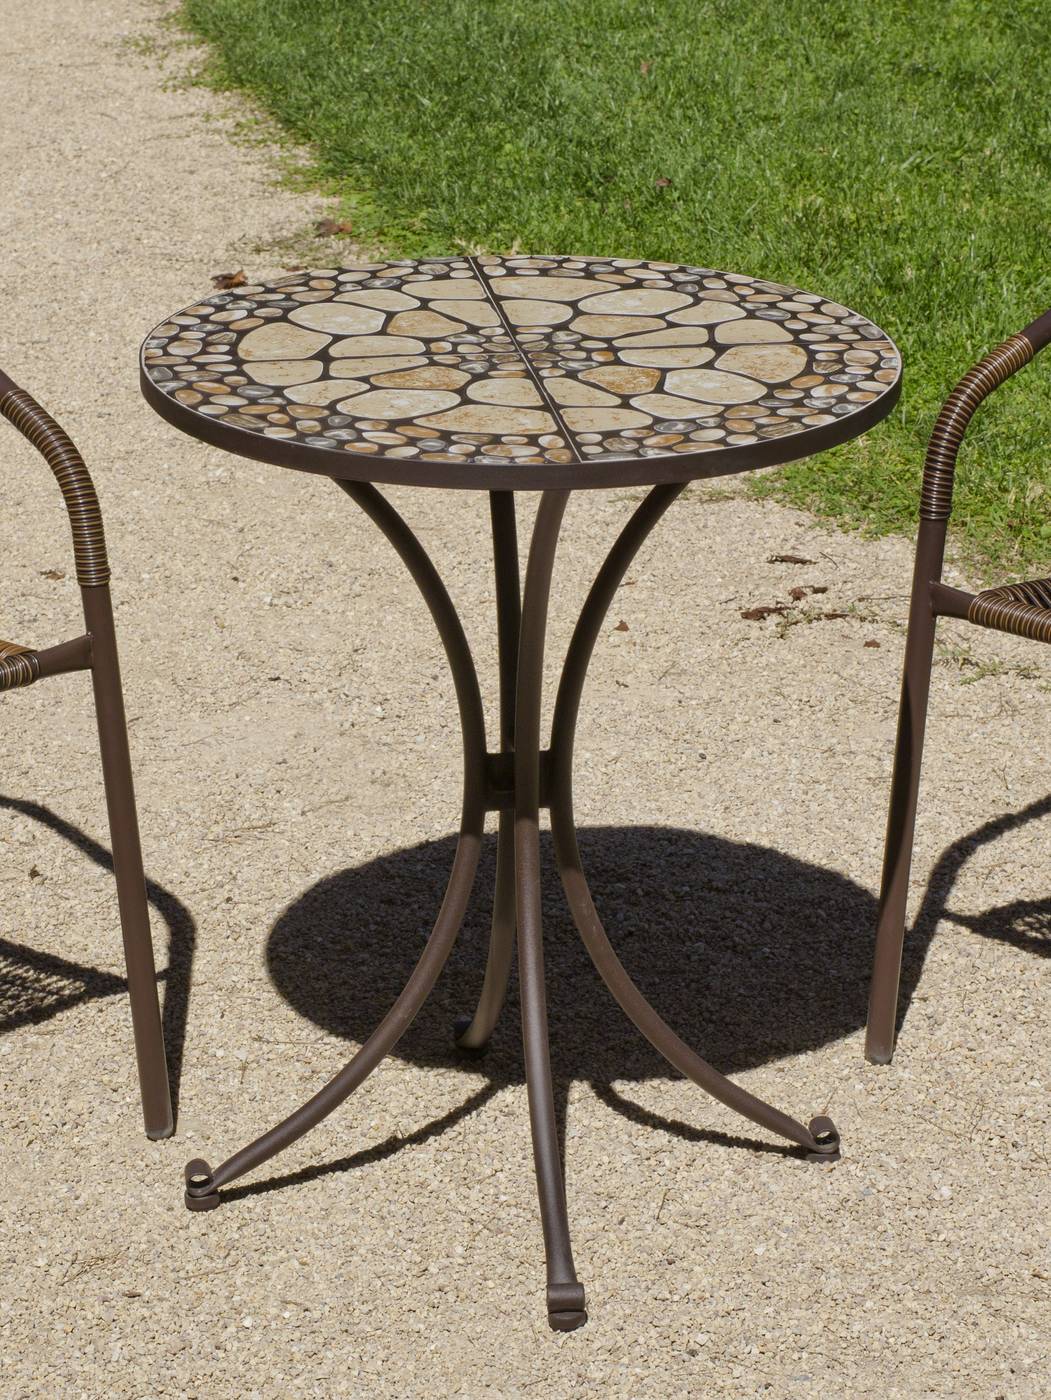 Conjunto Mosaico Manila-Brasil 60-2 - Conjunto de forja para jardín: 1 mesa mosaico redonda + 2 sillones de acero y wicker.